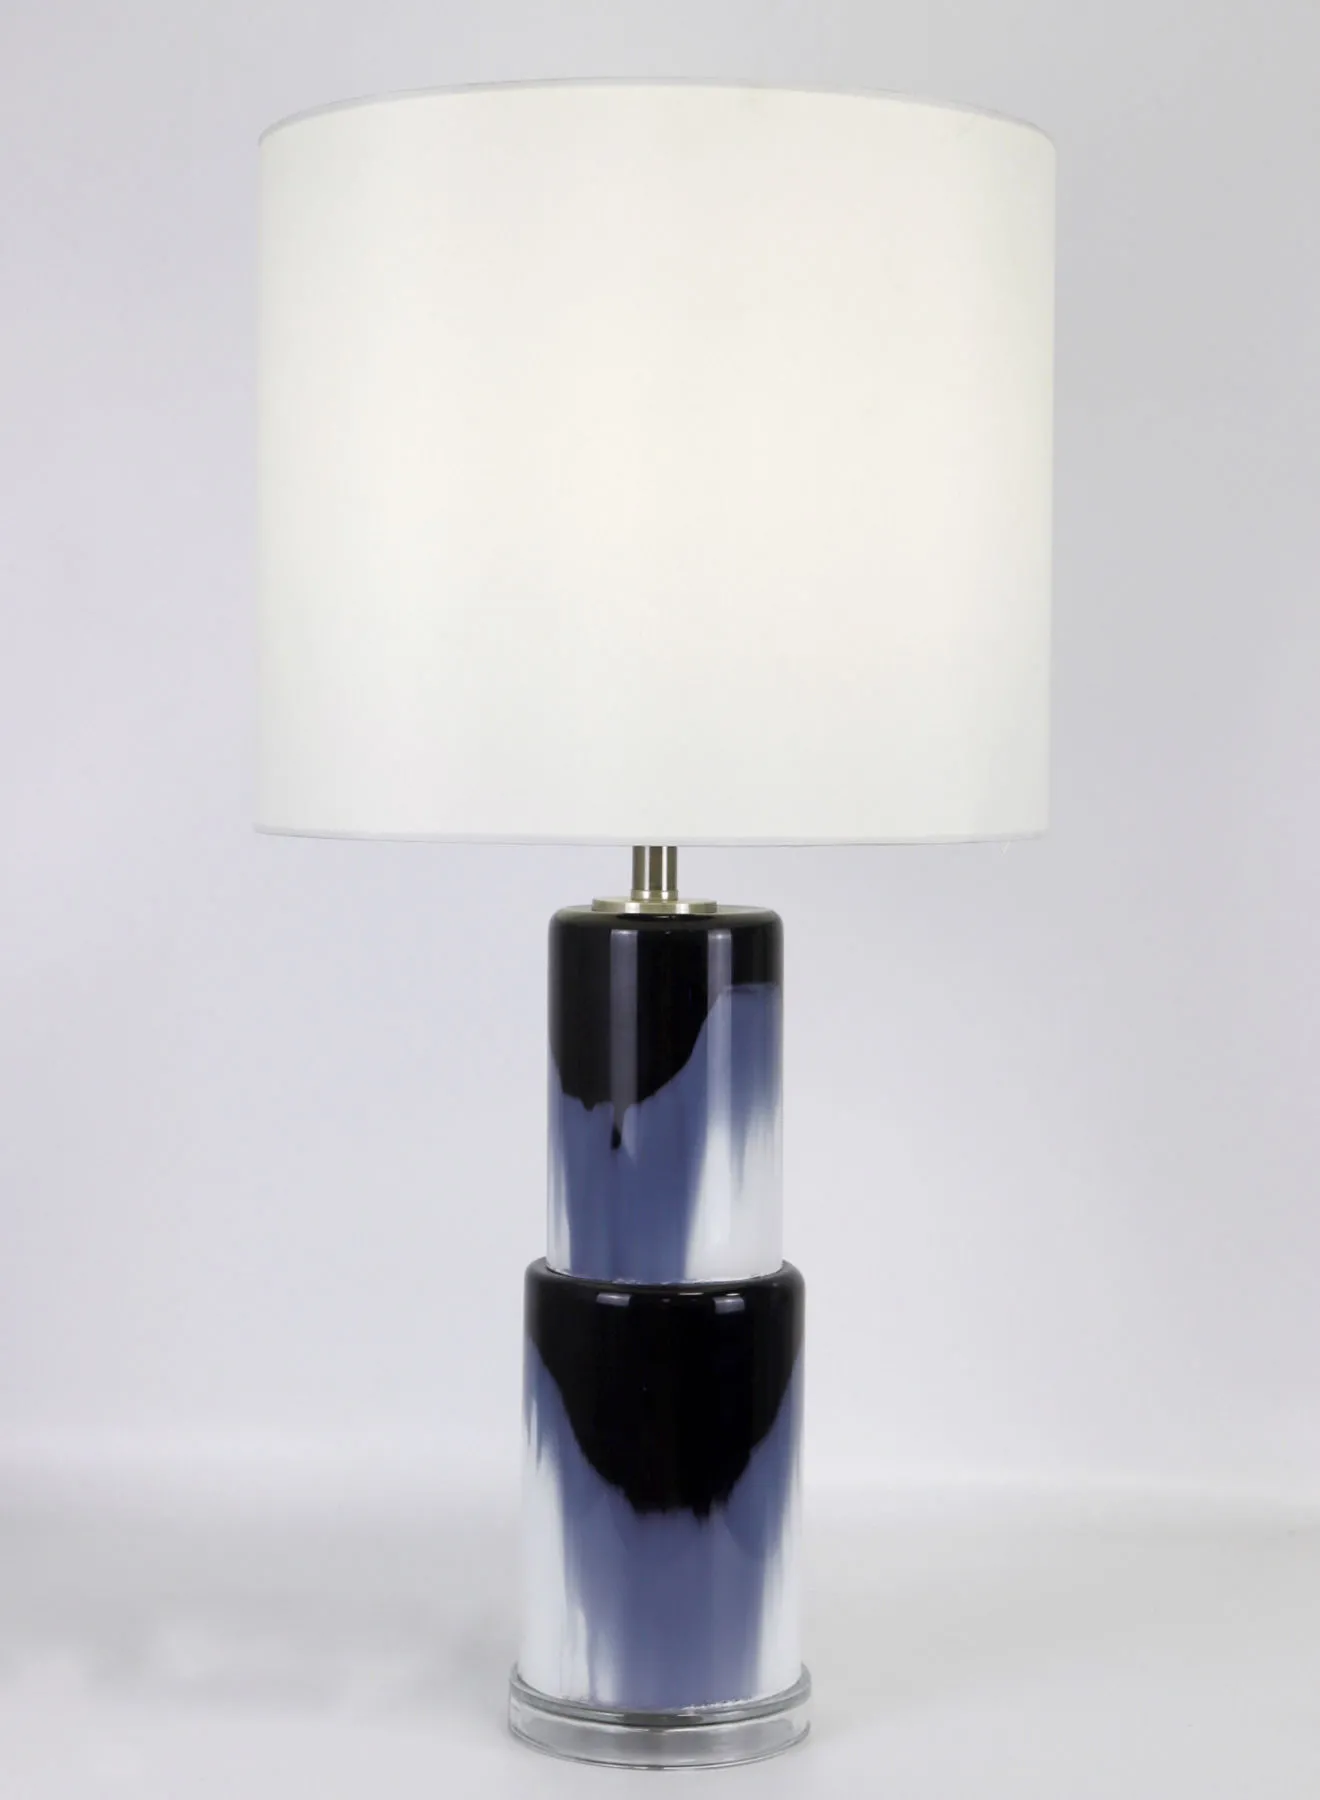 مصباح طاولة زجاجي بتصميم عصري من ebb & flow مادة فاخرة فريدة من نوعها ذات جودة عالية للمنزل الأنيق المثالي RSN71033 أزرق / أبيض 13 × 26